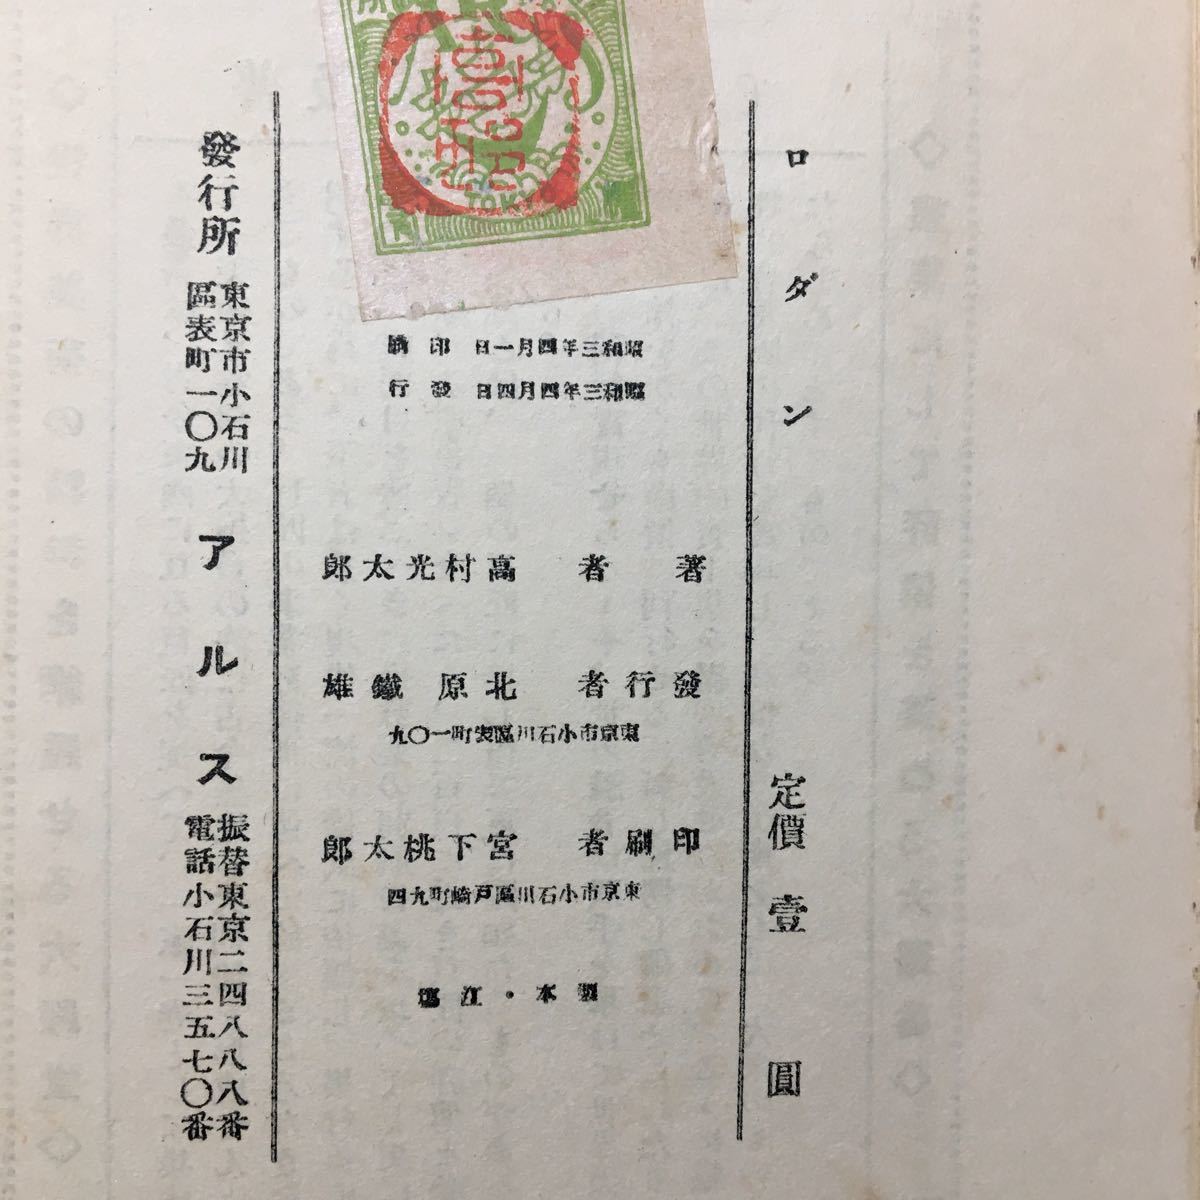 zaa-094♪ロダン 高村光太郎(著)(1928年) (アルス) 単行本 古書, 昭和3年4月 稀本